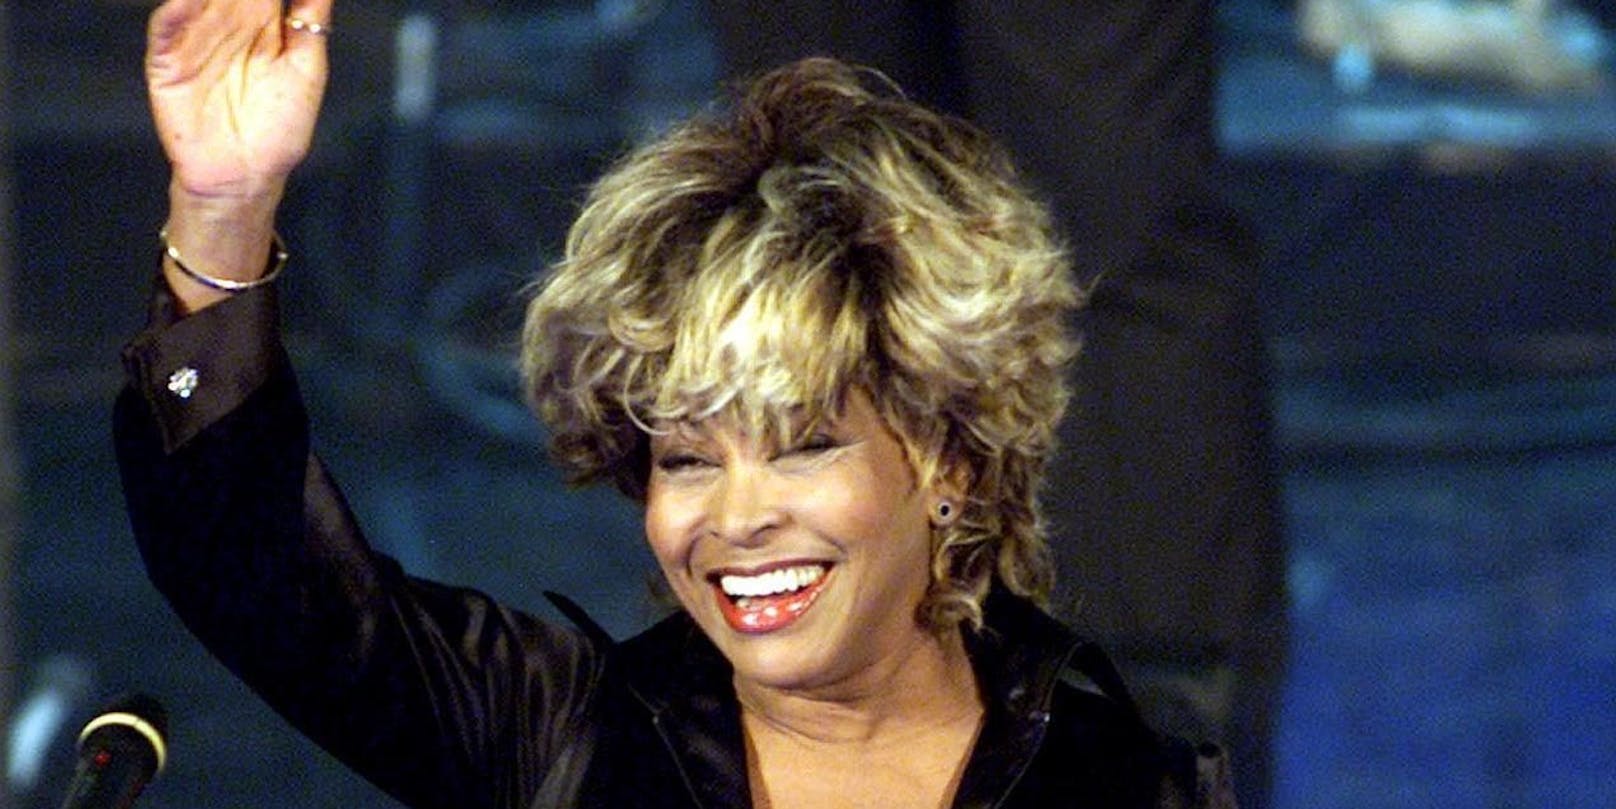 Ende März erscheint mit "Tina" ein neuer Dokumentarfilm über das Leben der Musiklegende. Dann will <strong>Tina Turner</strong> dem Showbusiness endgültig den Rücken kehren.